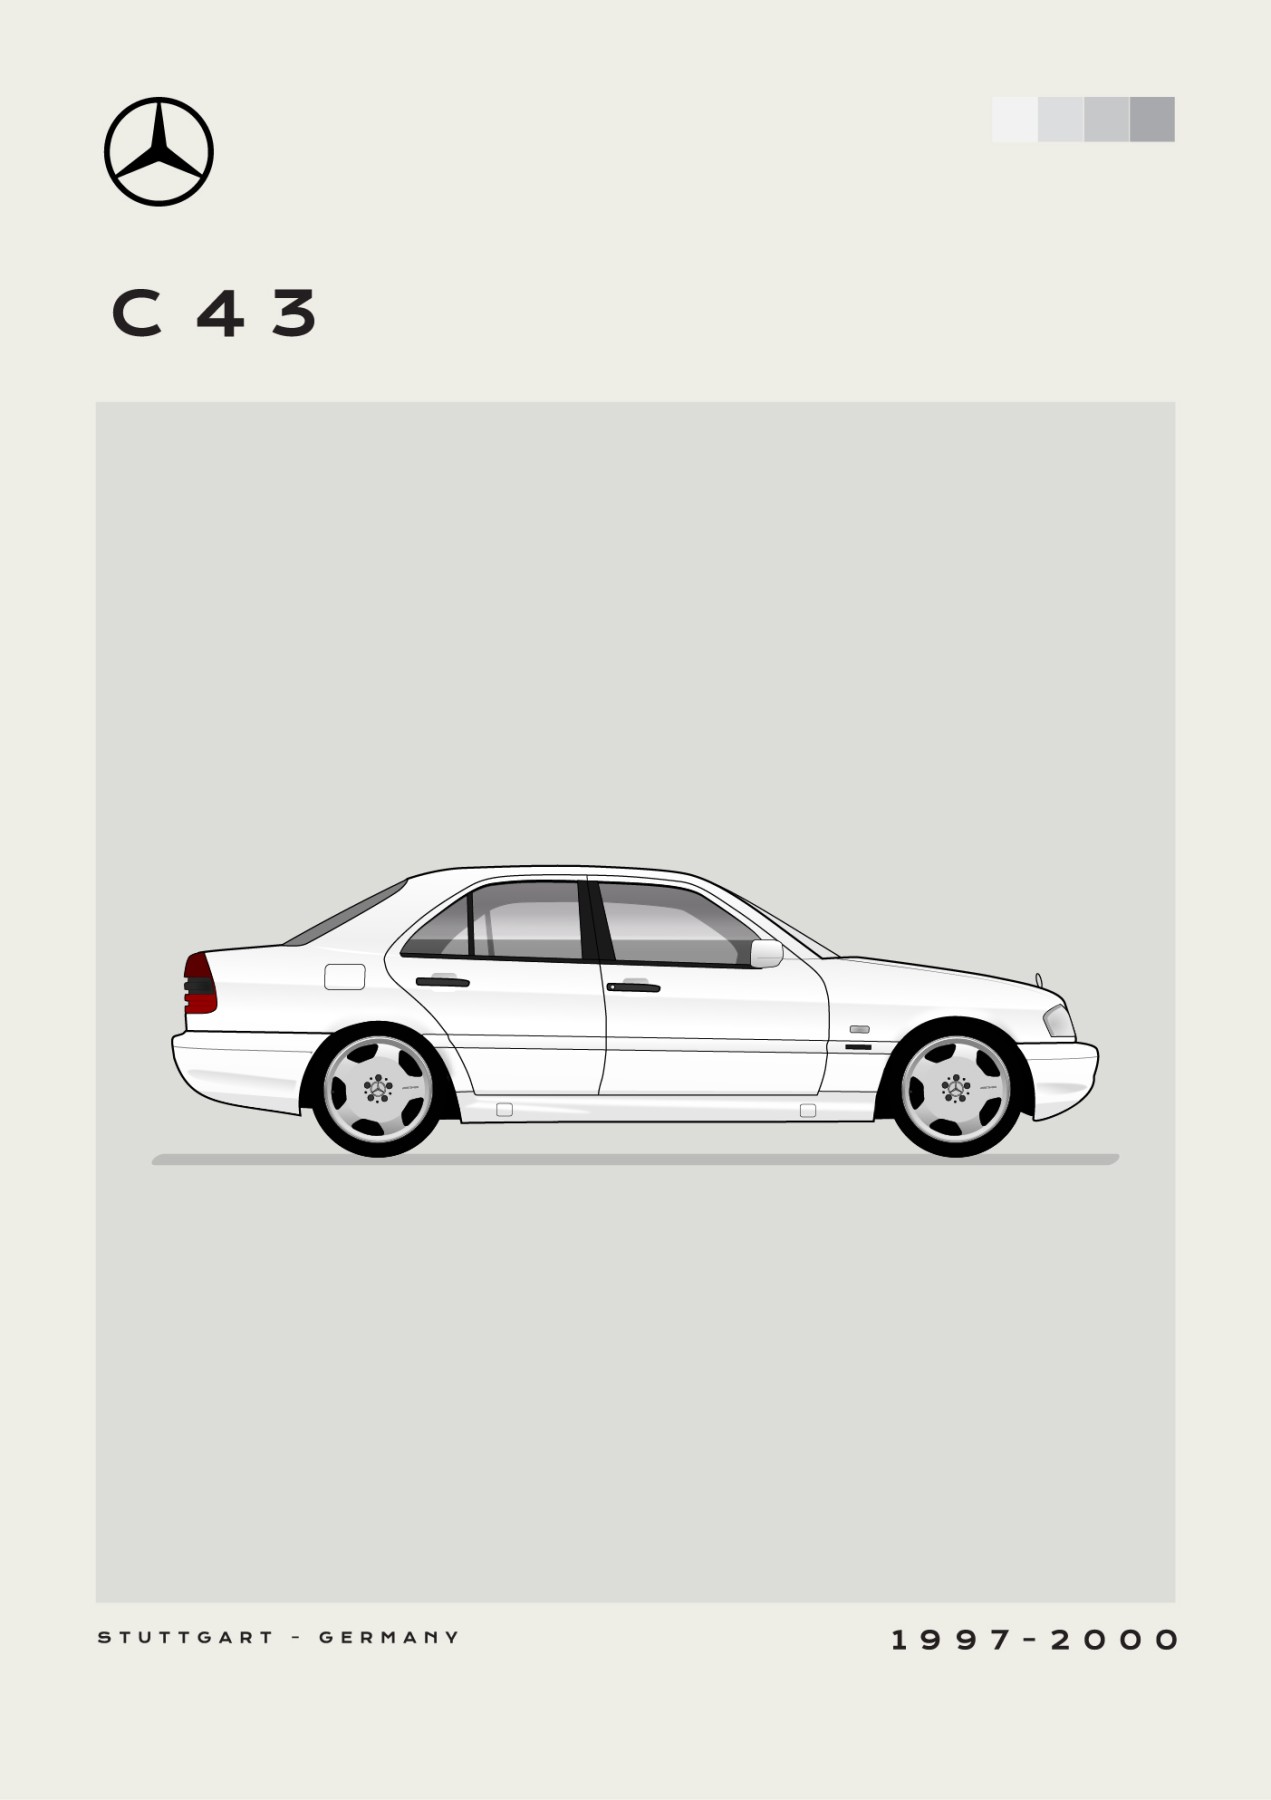 Mercedes - C43 - White